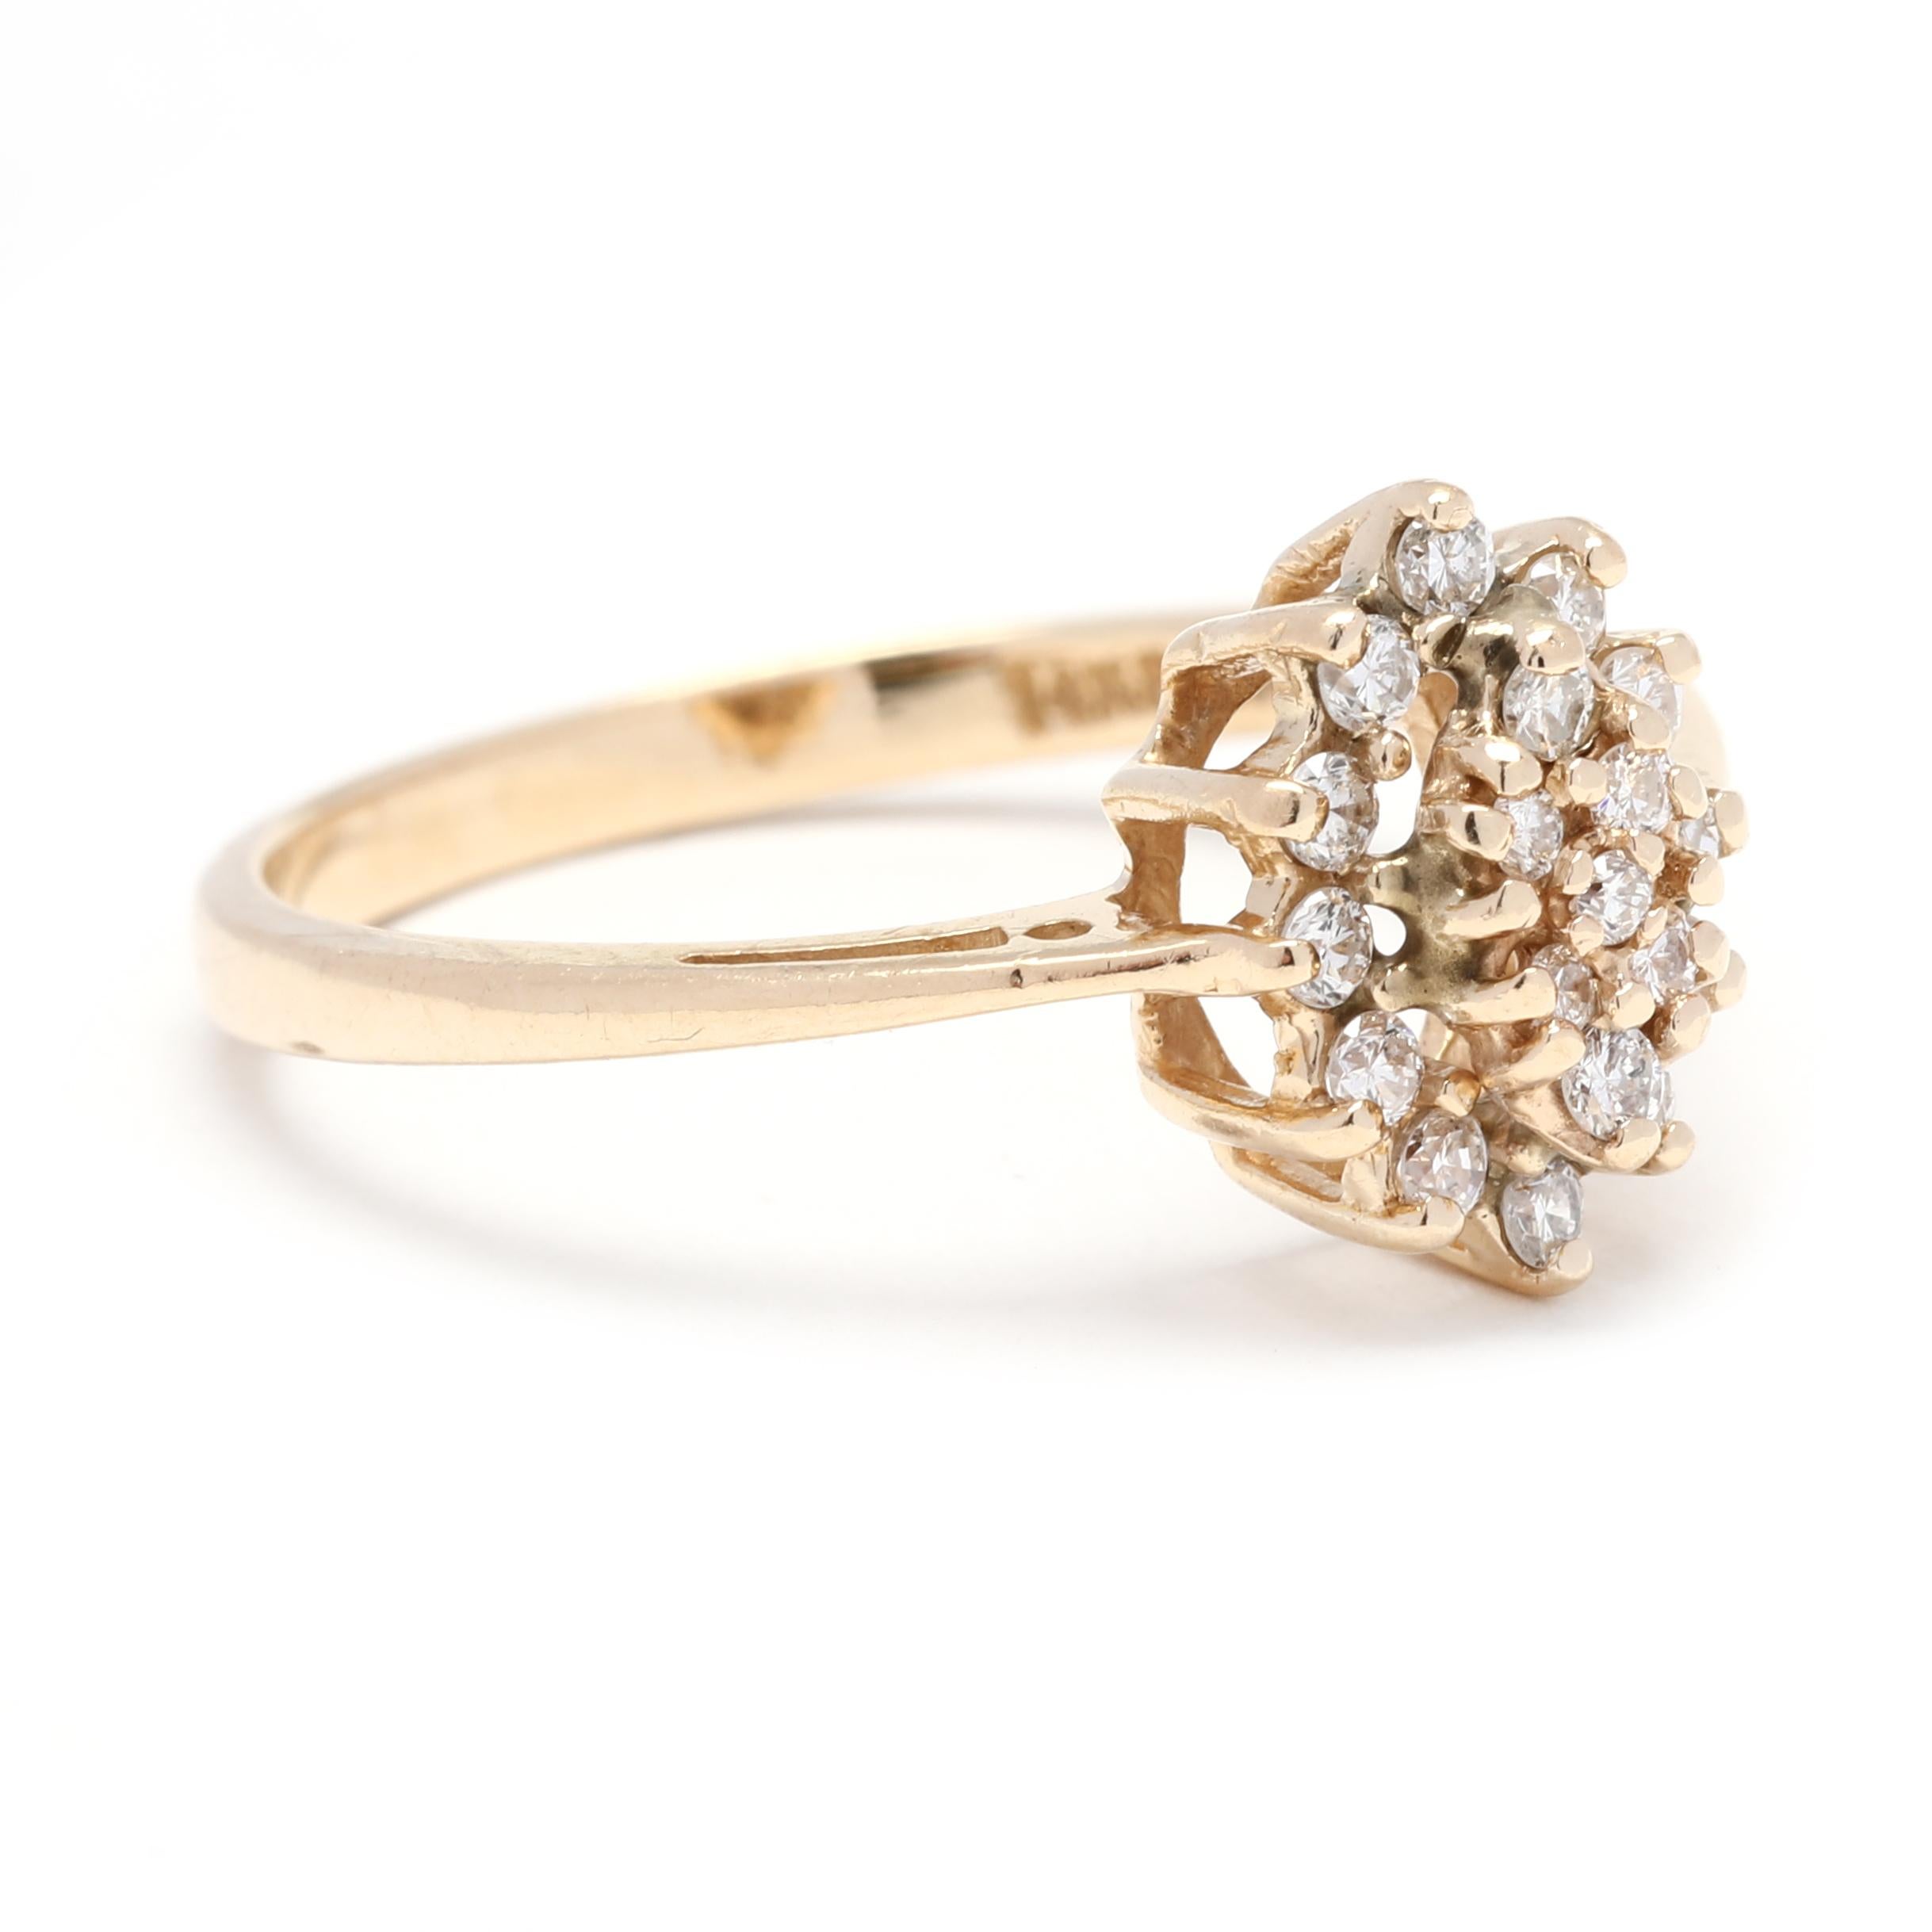 Dieser wunderschöne 0,25ctw Navette Diamant-Cluster-Ring strahlt klassische Schönheit aus. Der aus 14 Karat Gelbgold gefertigte Ring ist mit 12 funkelnden Diamanten besetzt, die für zusätzlichen Glanz sorgen. Dieser elegante und zeitlose Diamantring